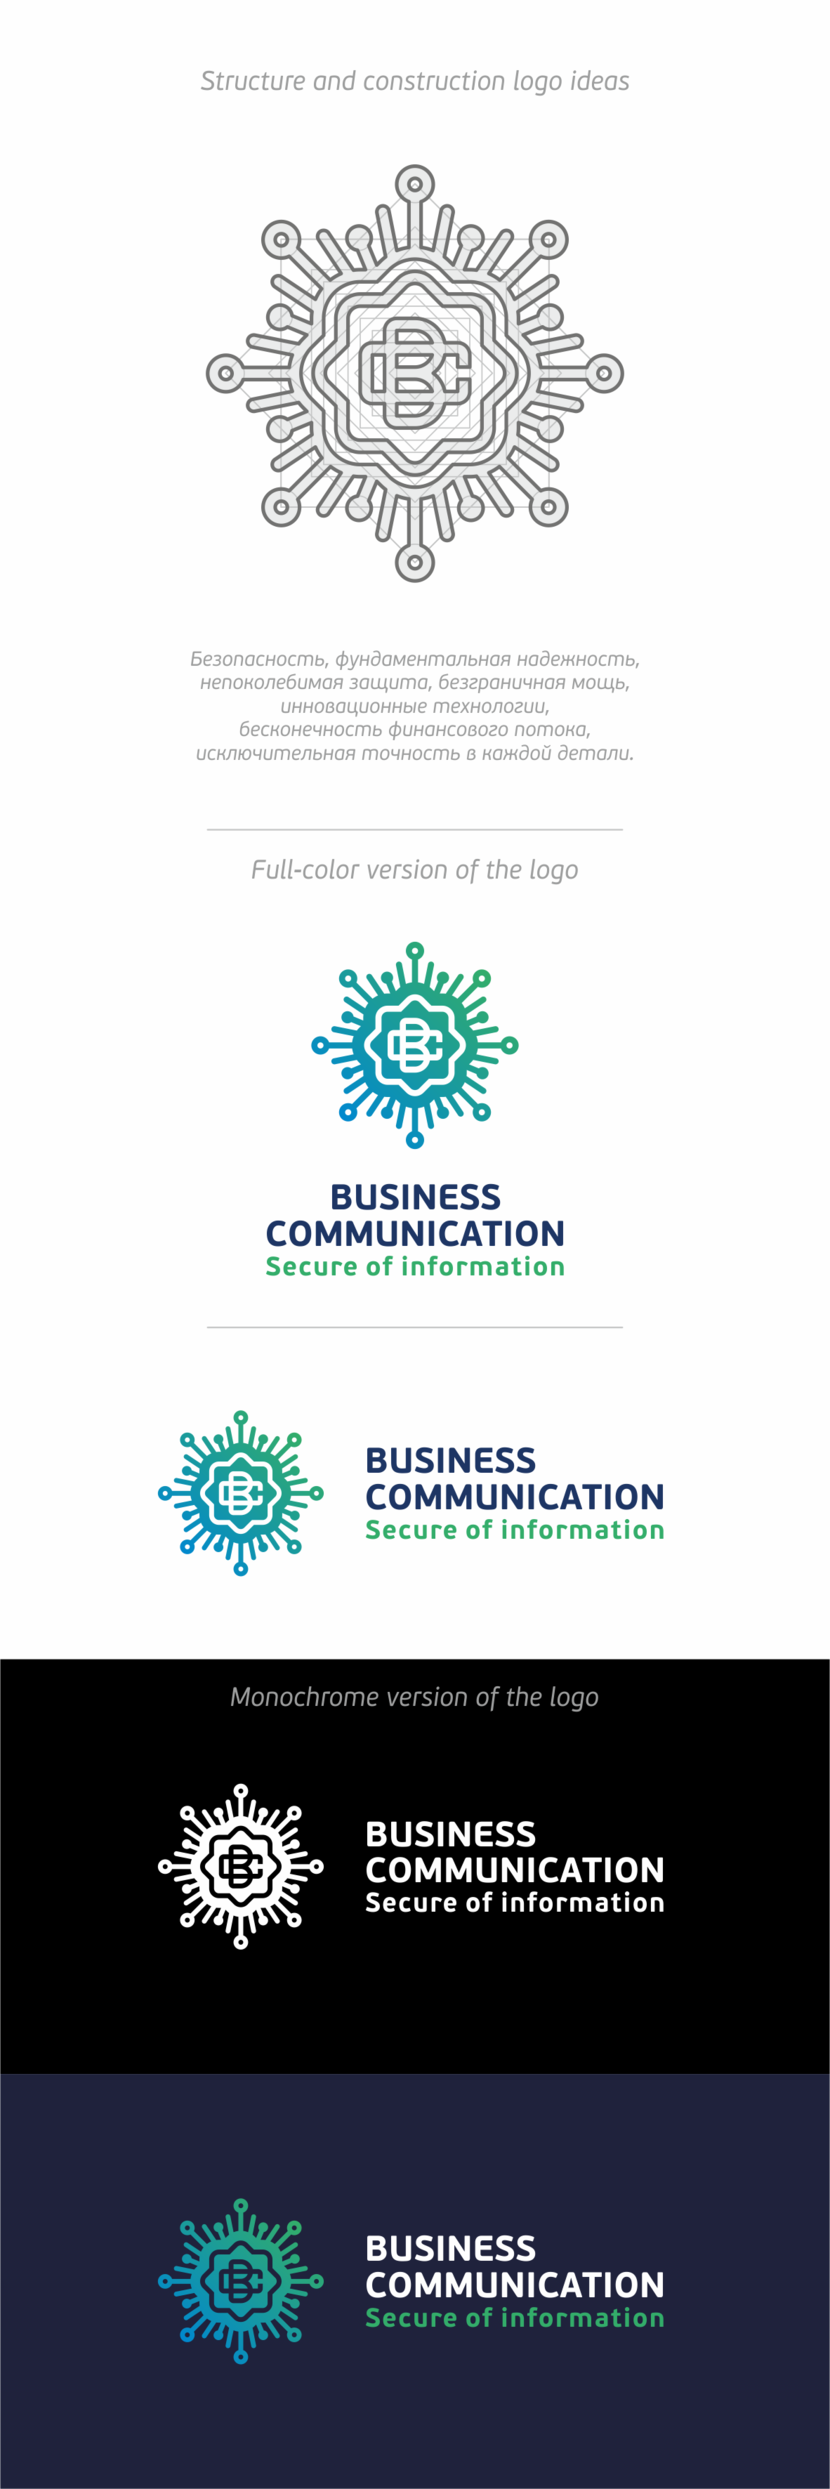 + такой варианат) - Разработать фирменный логотип Бизнес Коммуникации